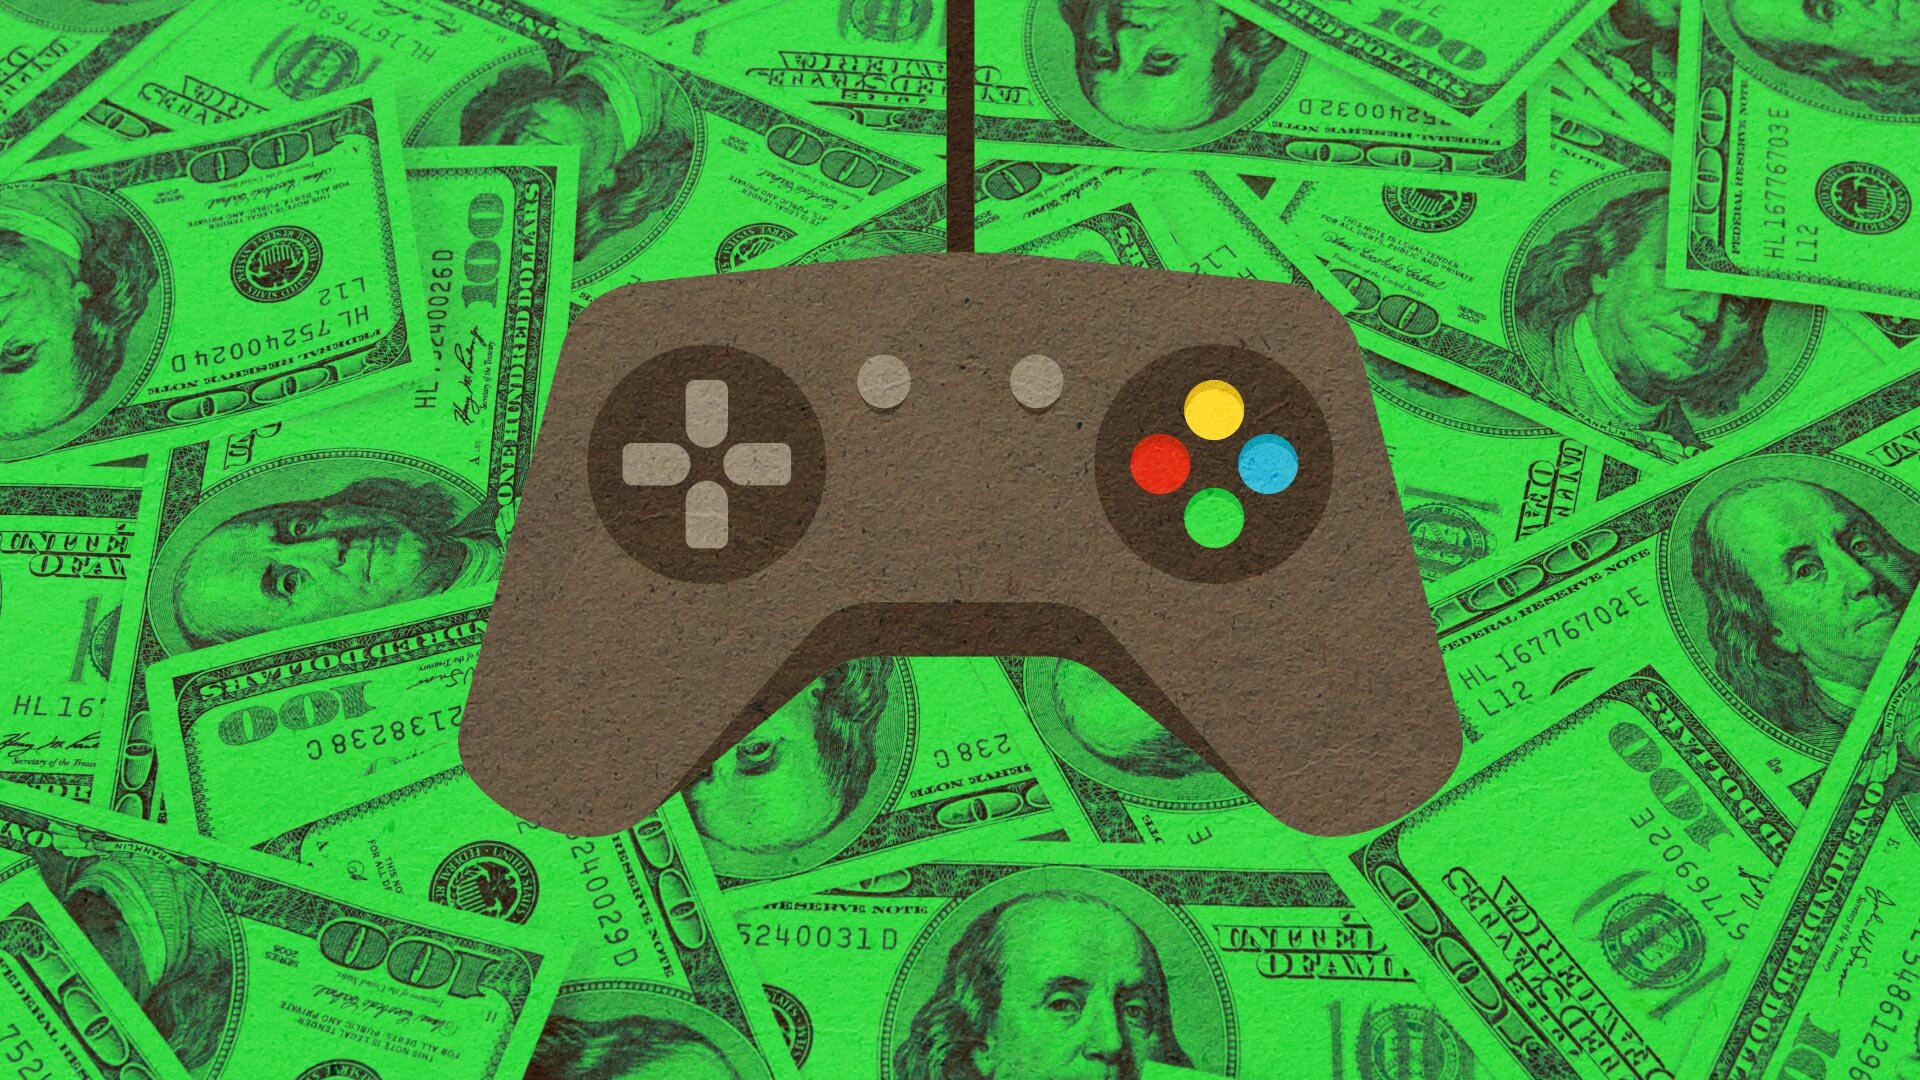 Игры на реальные деньги games money pays